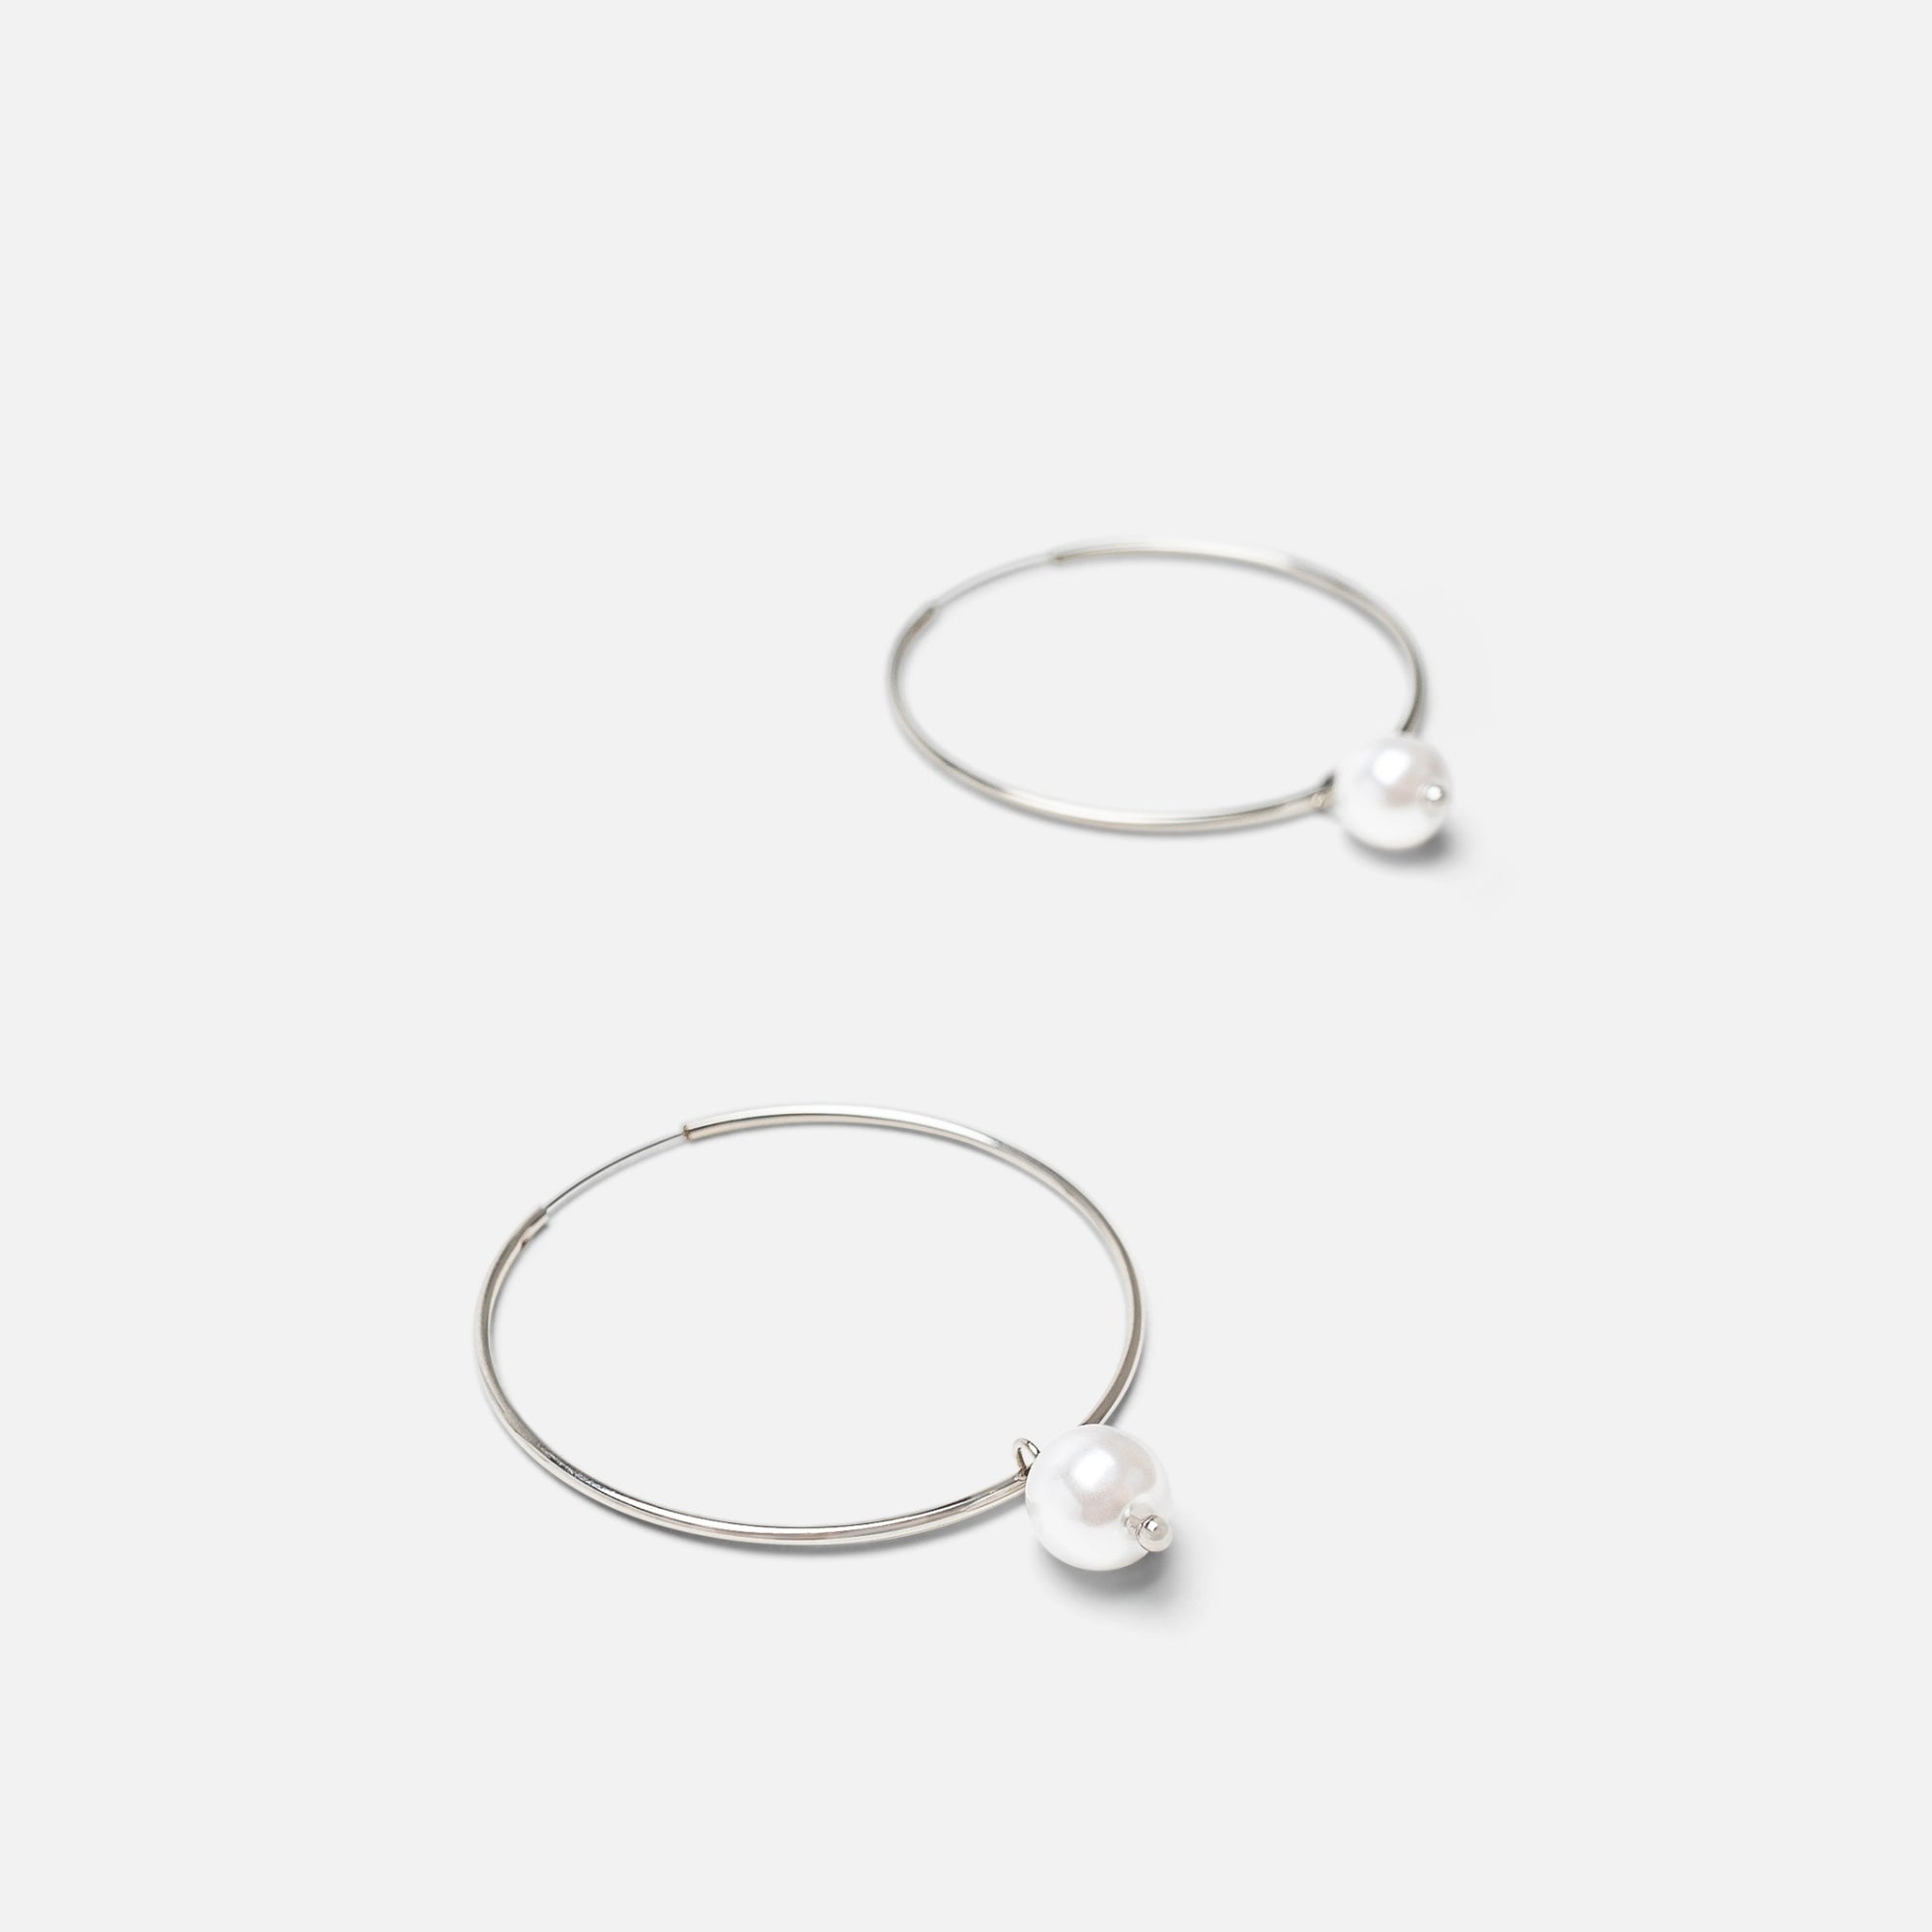 Silver hoop earrings with pearl charm 